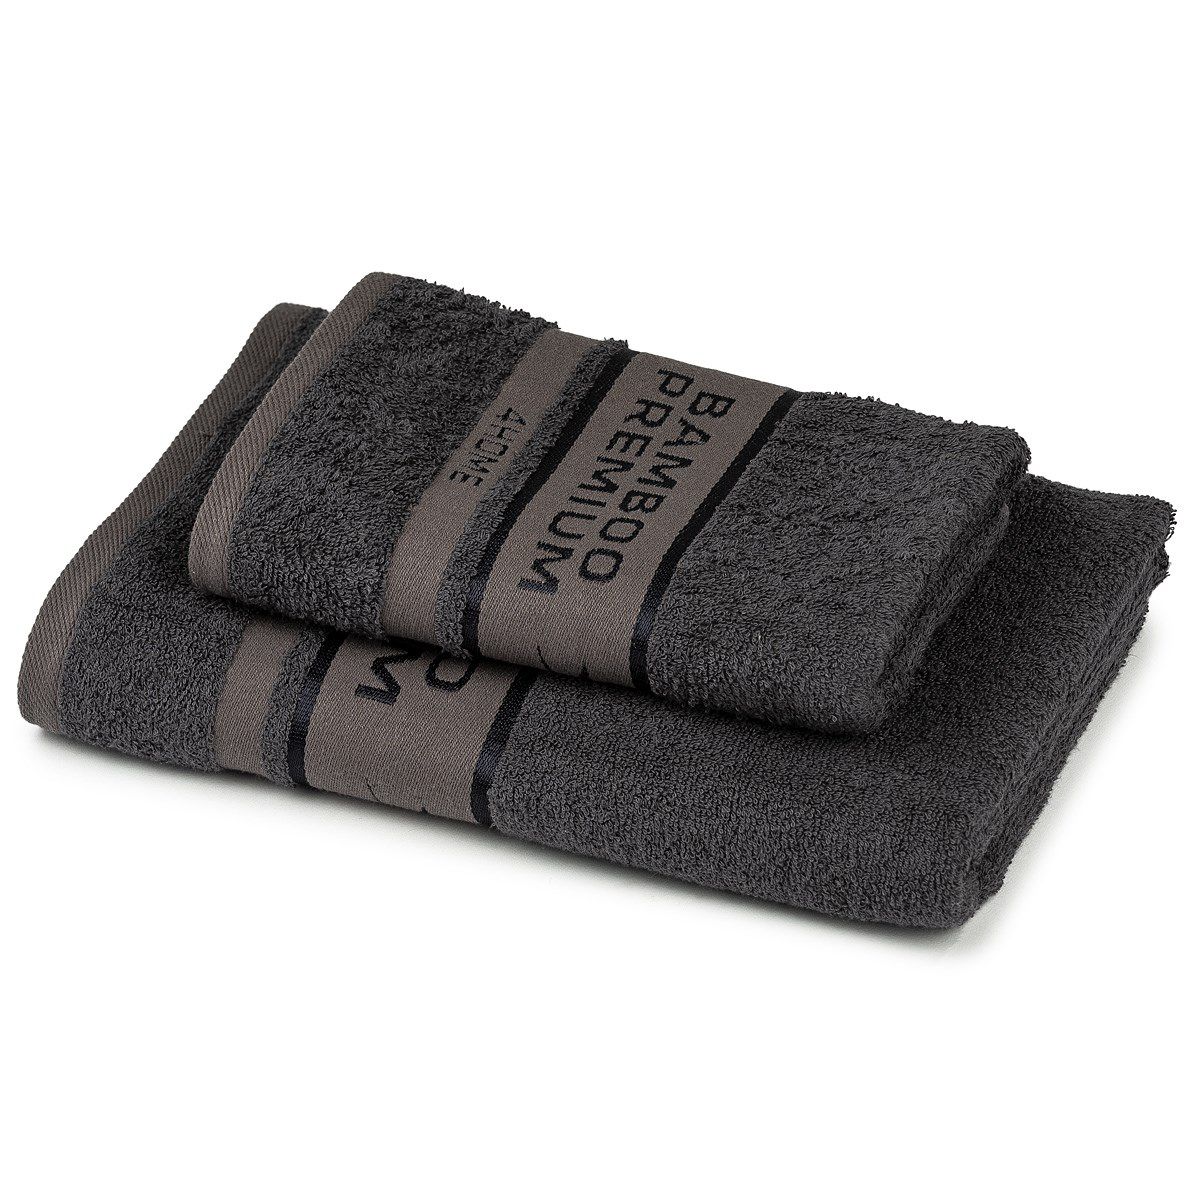 4Home Sada Bamboo Premium osuška a ručník tmavě šedá, 70 x 140 cm, 50 x 100 cm - 4home.cz